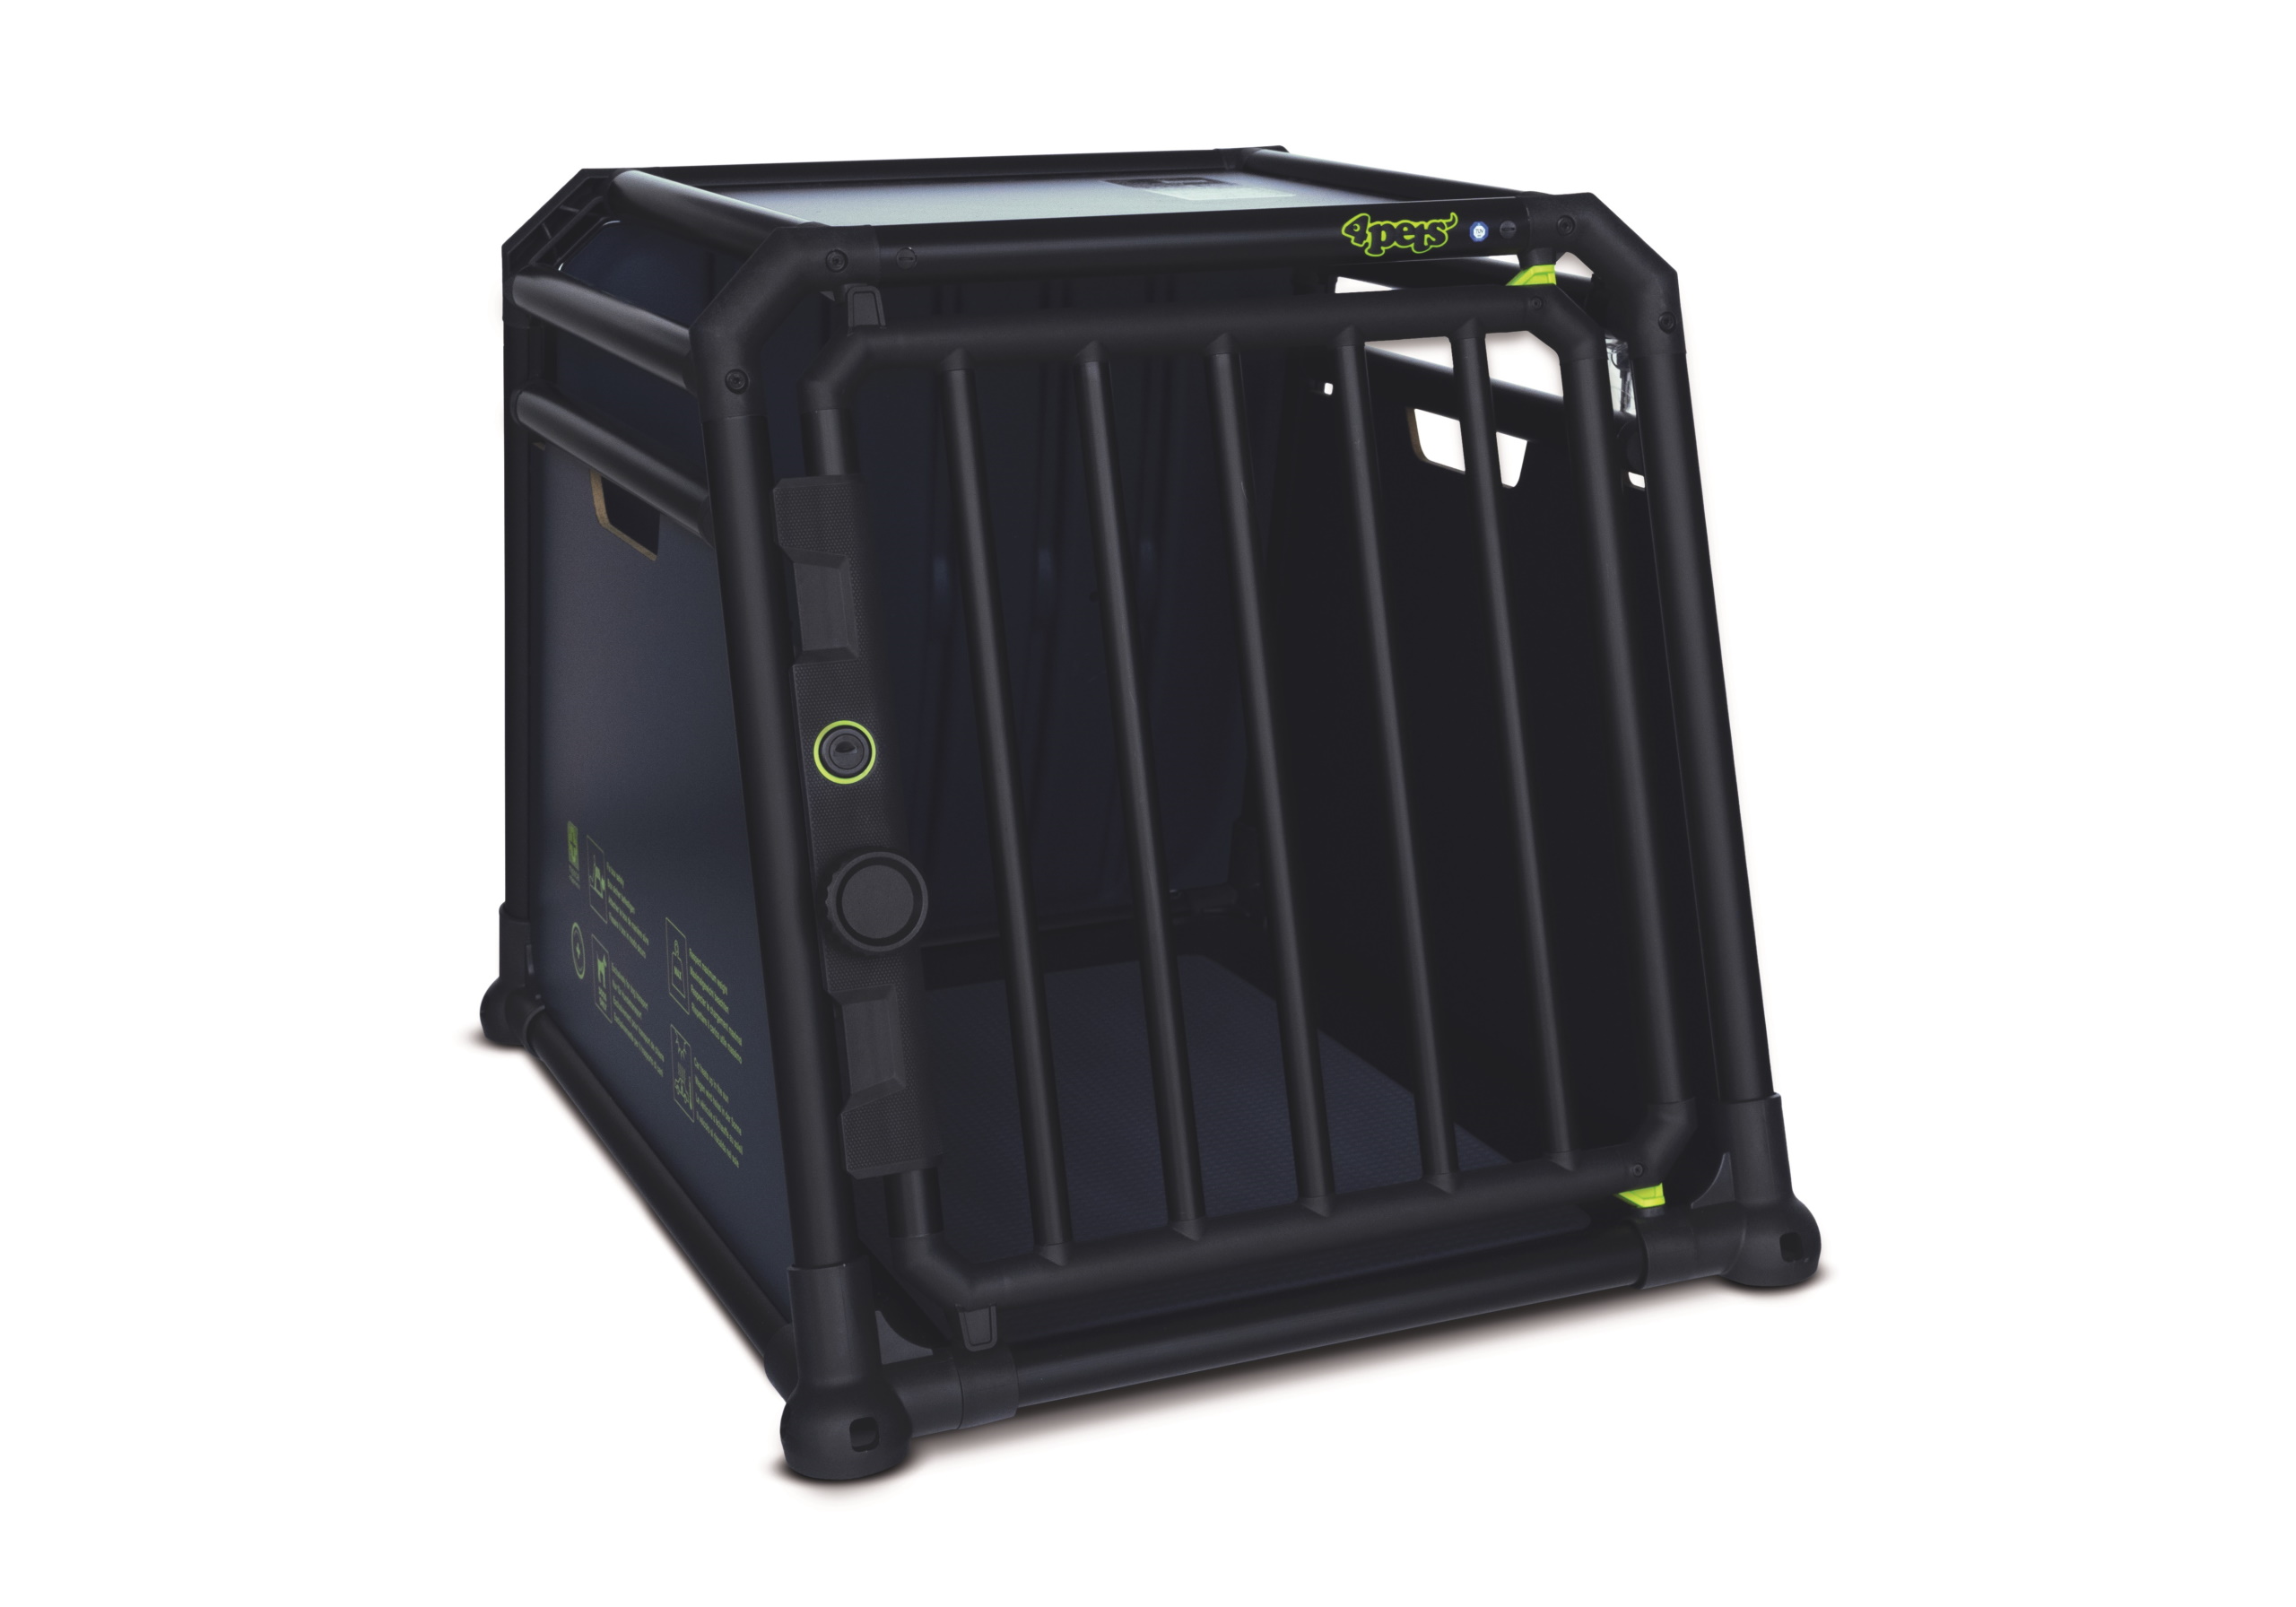 :BGPN1S - 4pets PRO, TV-approved black dog cage, size 1 - RETURNED